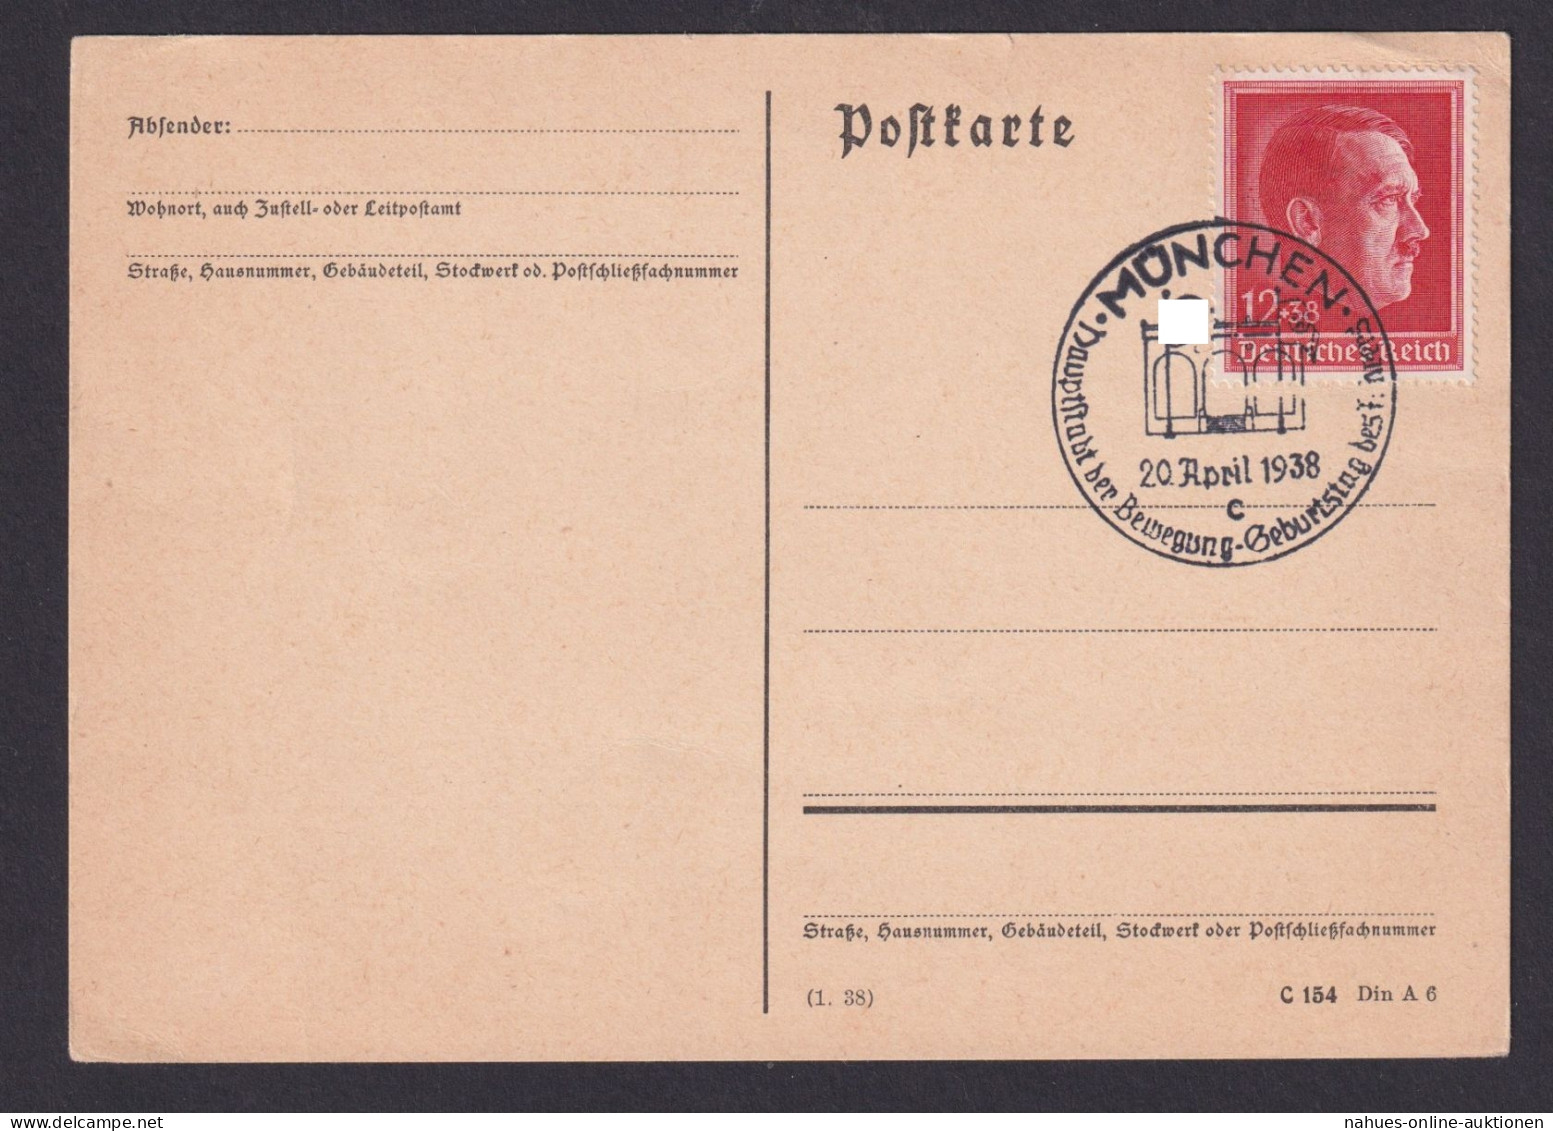 München Deutsches Reich Postkarte SSt Hauptstadt D. Bewegung Geburtstag - Lettres & Documents